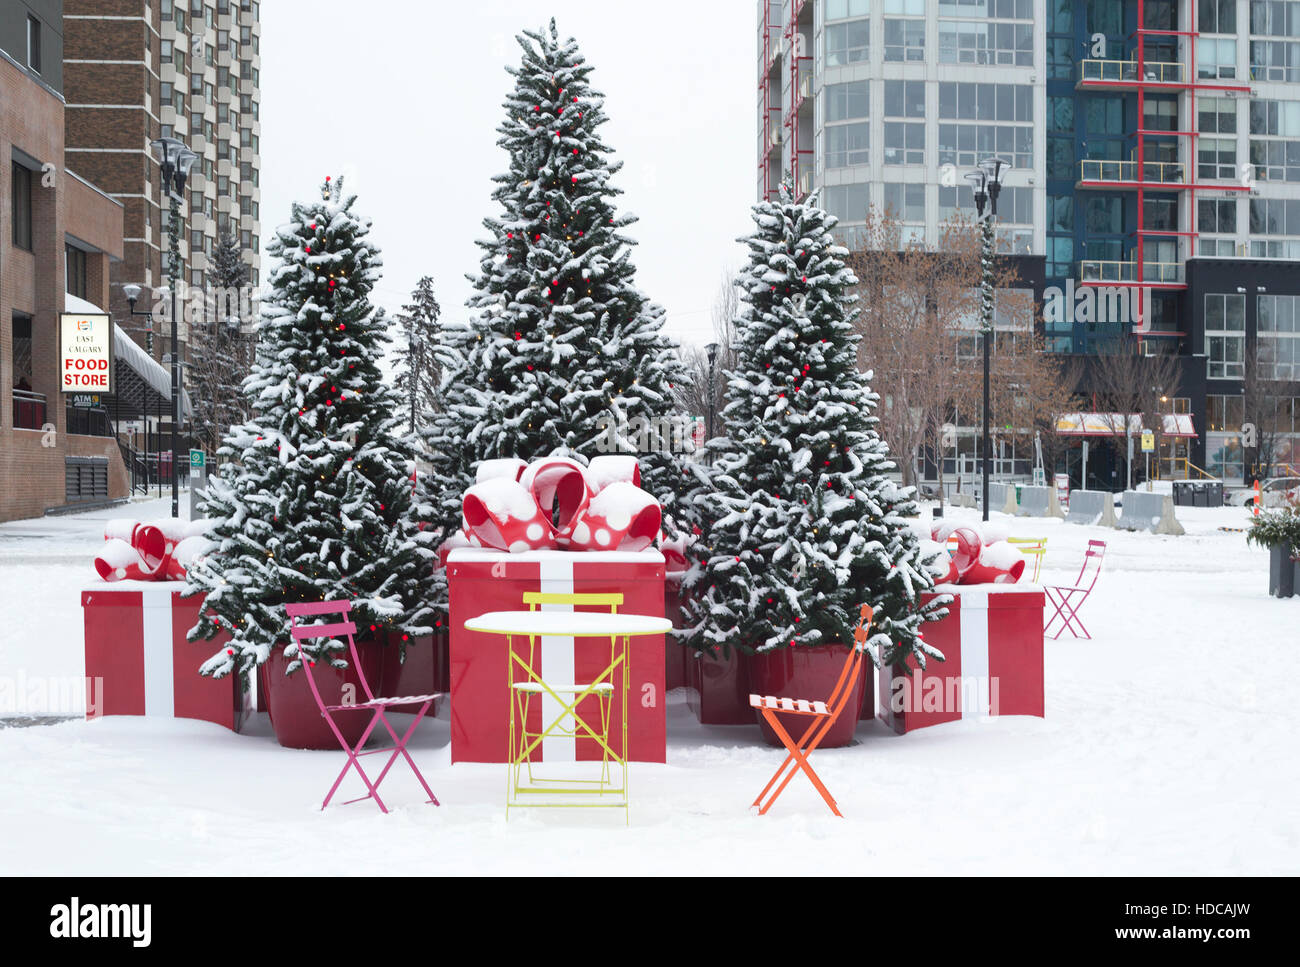 Exposition de Noël sur la place enneigée, East Village, Calgary Banque D'Images